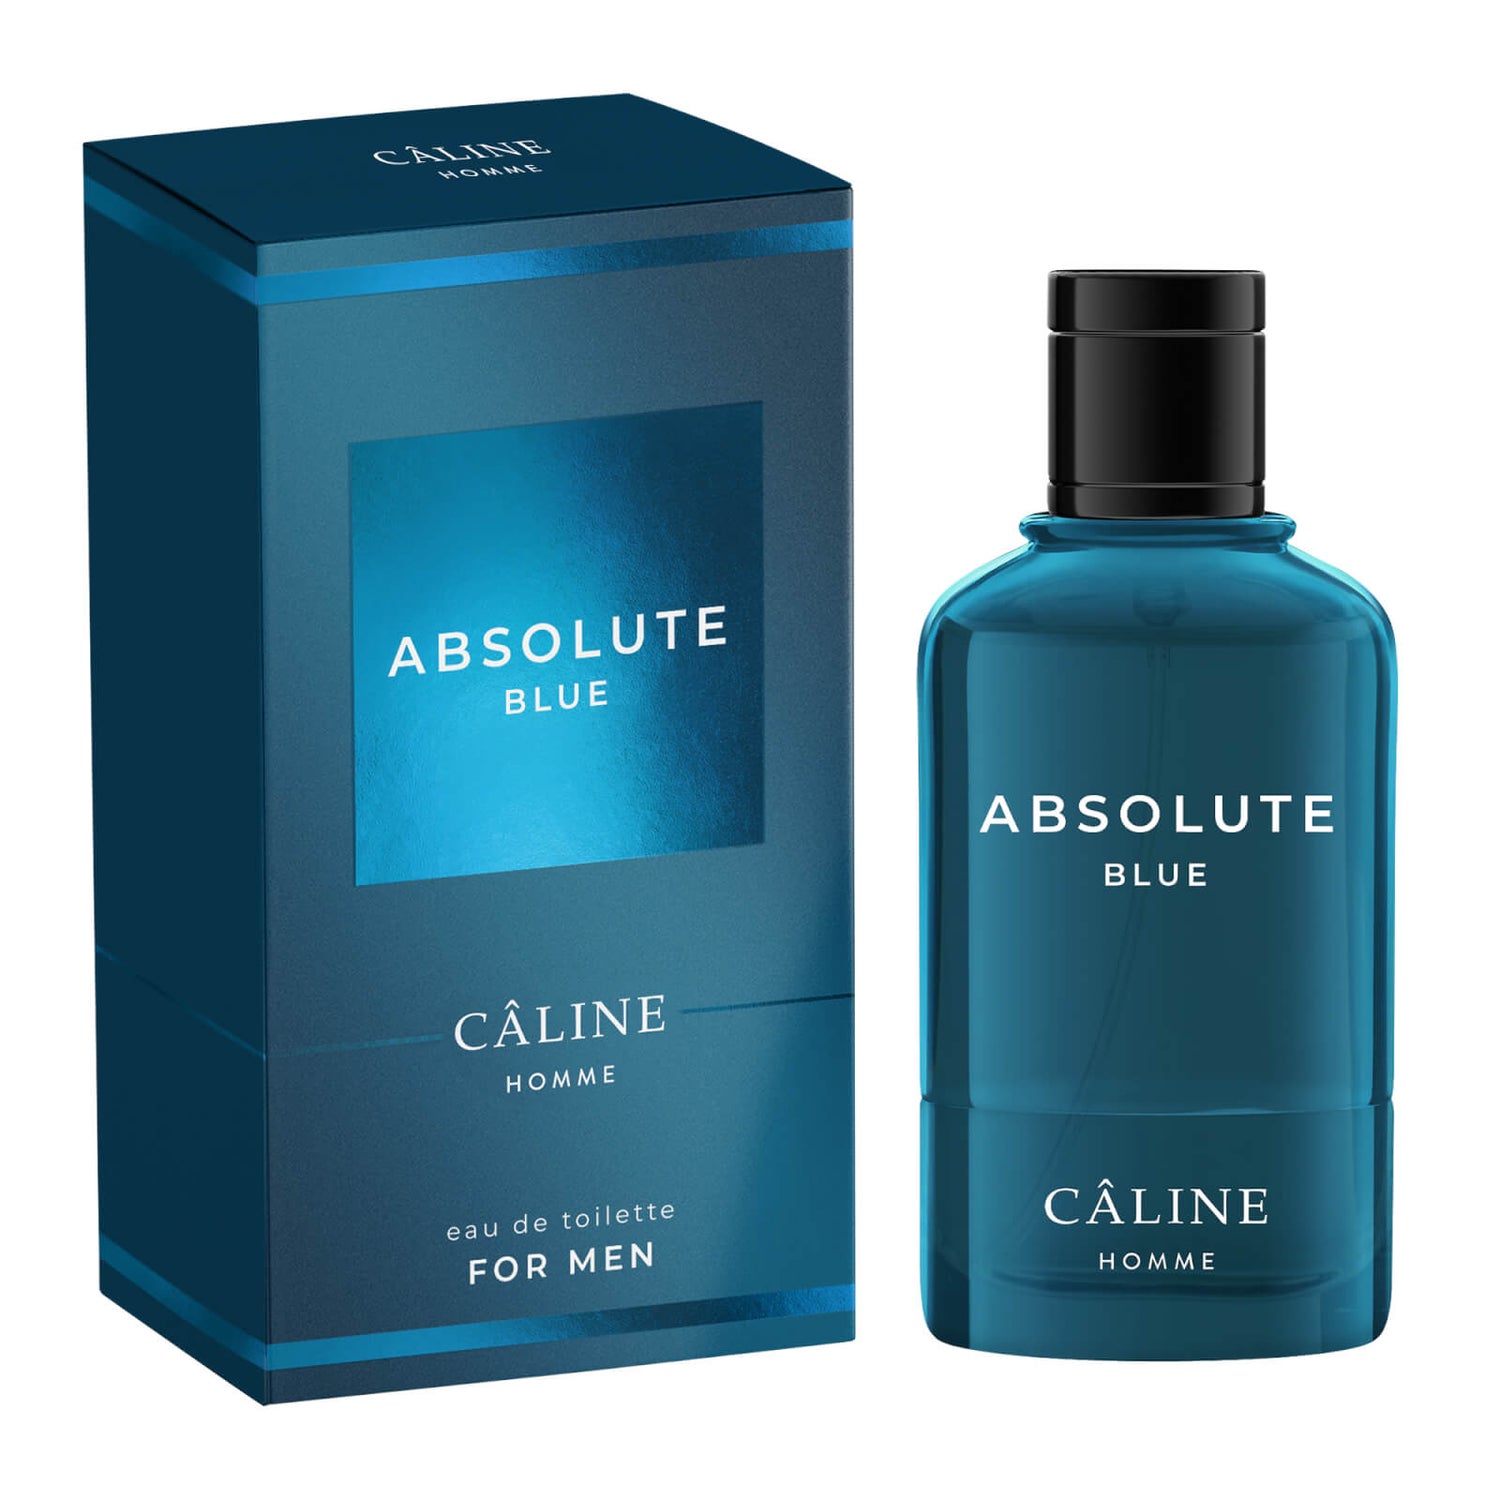 Caline Homme - Absolute Blue, Eau de Toilette